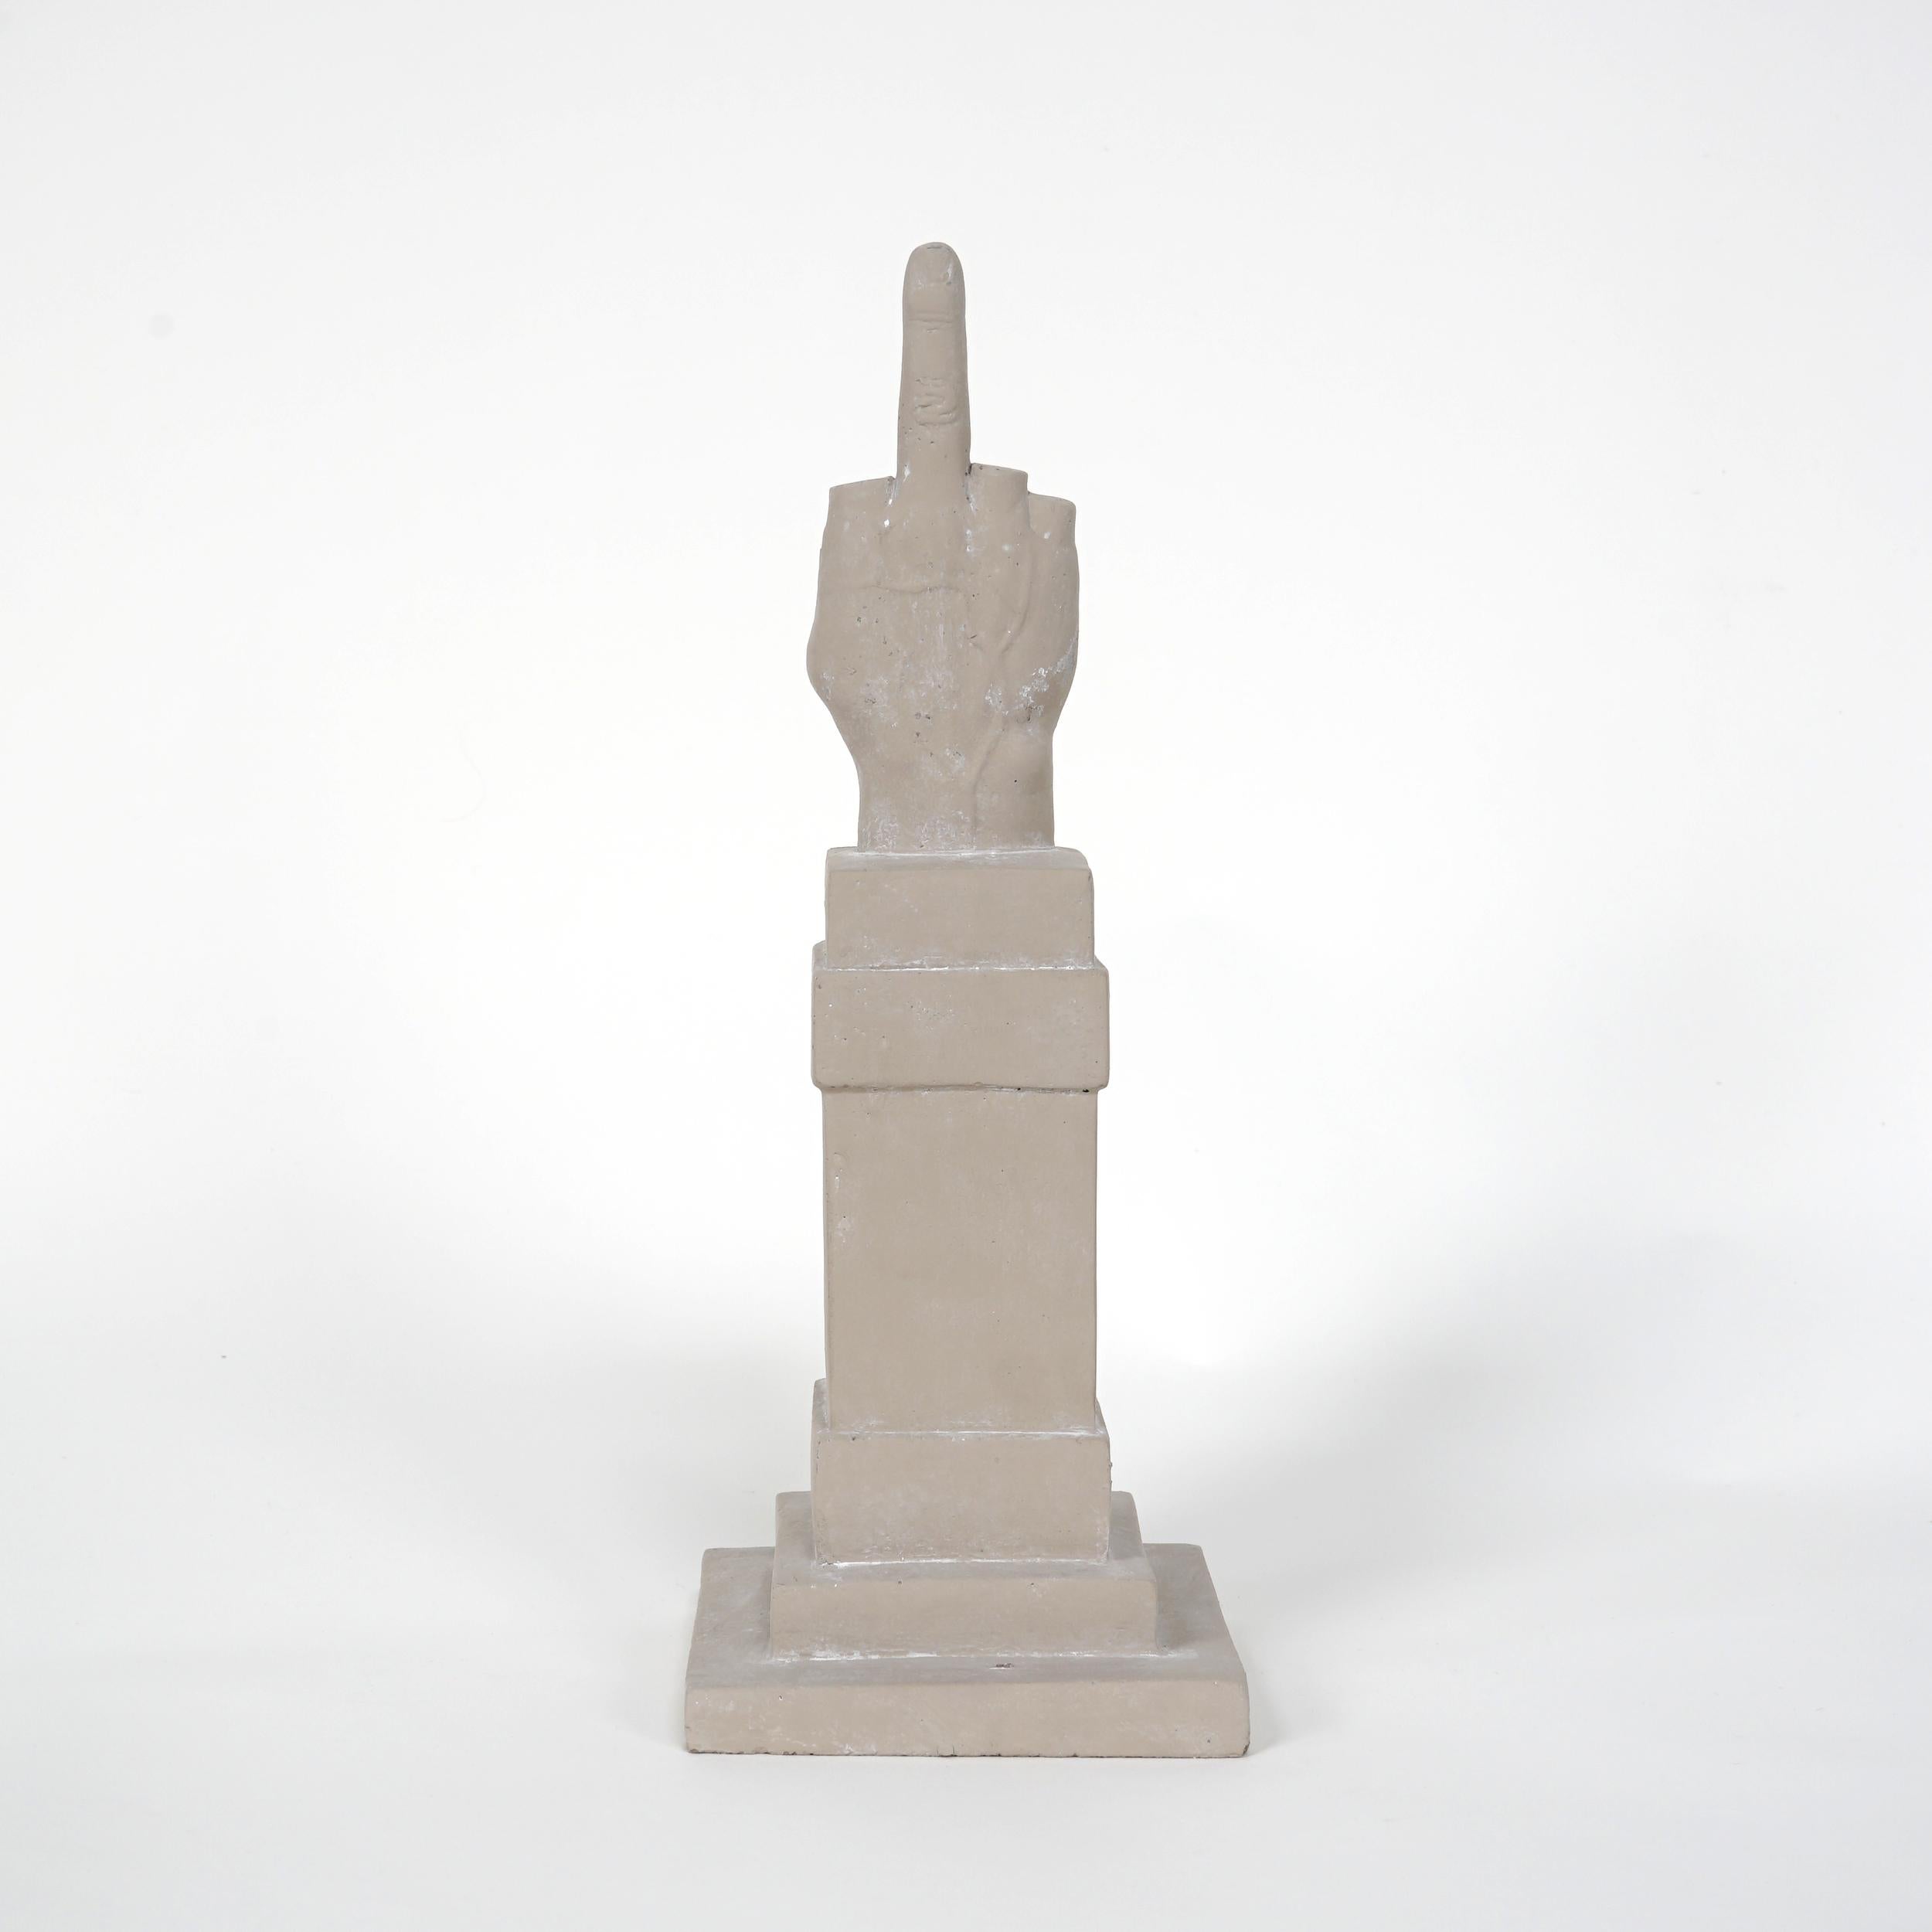 
Maurizio Cattelan
L.O.V. E. 
2015
Beton
40 × 18 × 18 cm
(15.7 × 7.1 × 7.1 in)
Gestempelt vom Nachlass des Künstlers
Auflage von 1800
In neuwertigem Zustand, in der Original-Holzkiste und mit einem Echtheitszertifikat versehen

Die Statue, die den